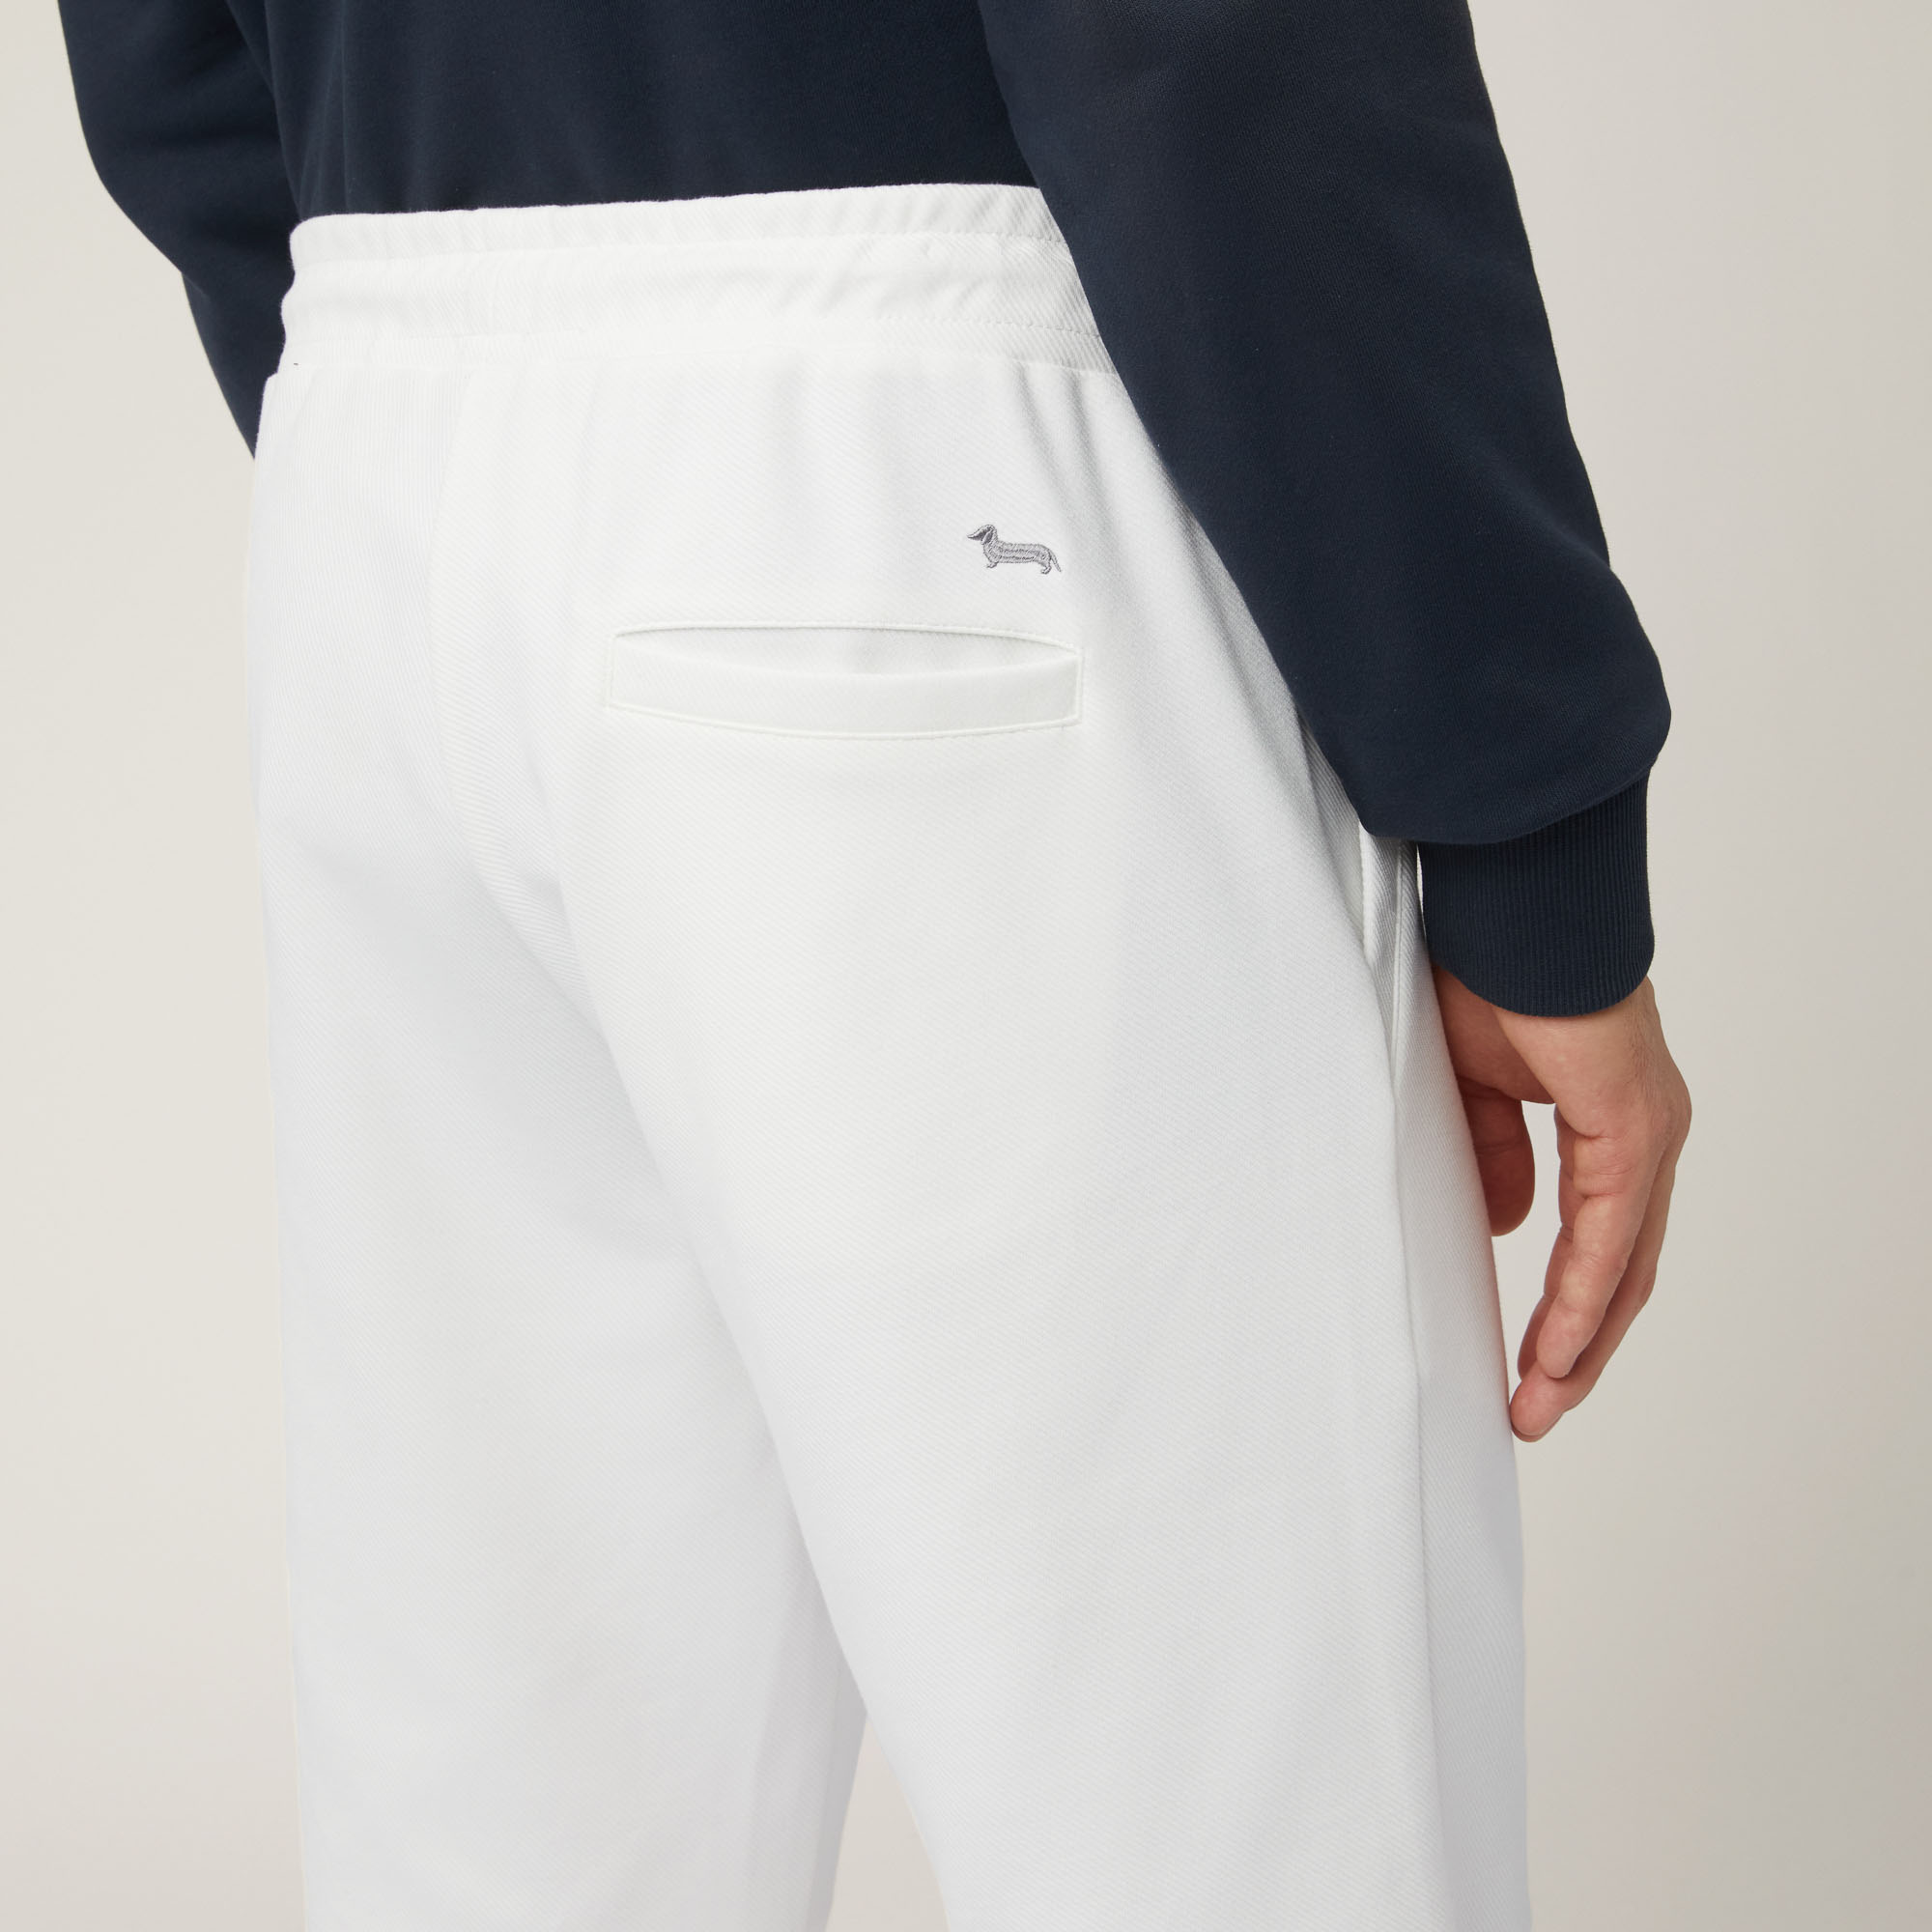 Shorts aus Stretch-Baumwolle mit Tasche hinten, Weiß, large image number 2